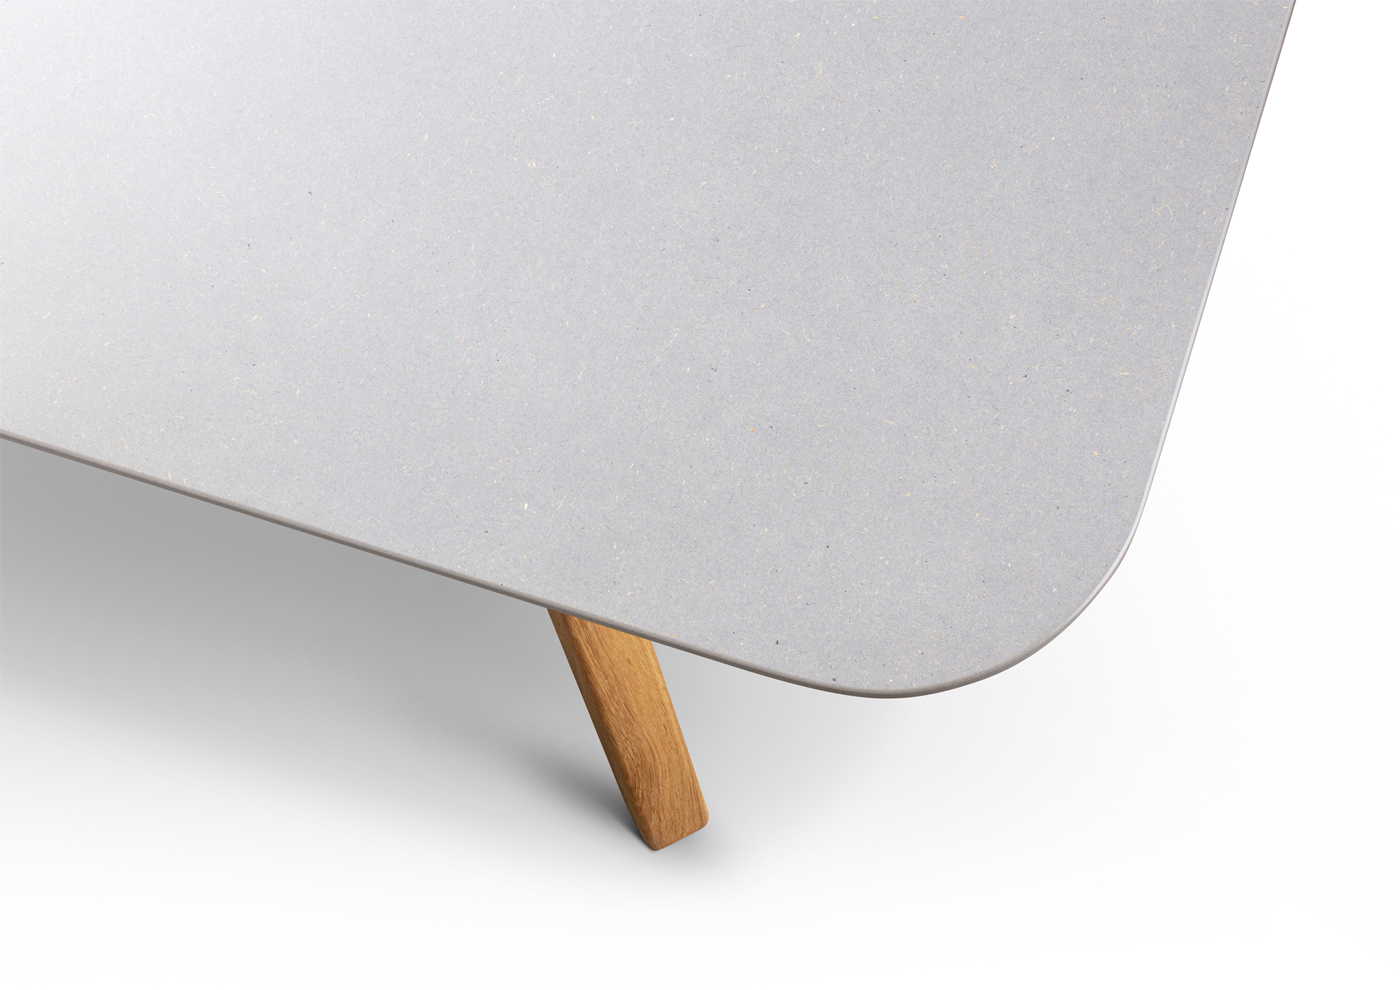 Magnolia Table - view5 - Davide Mezzasalma - Furniture design - Berlin